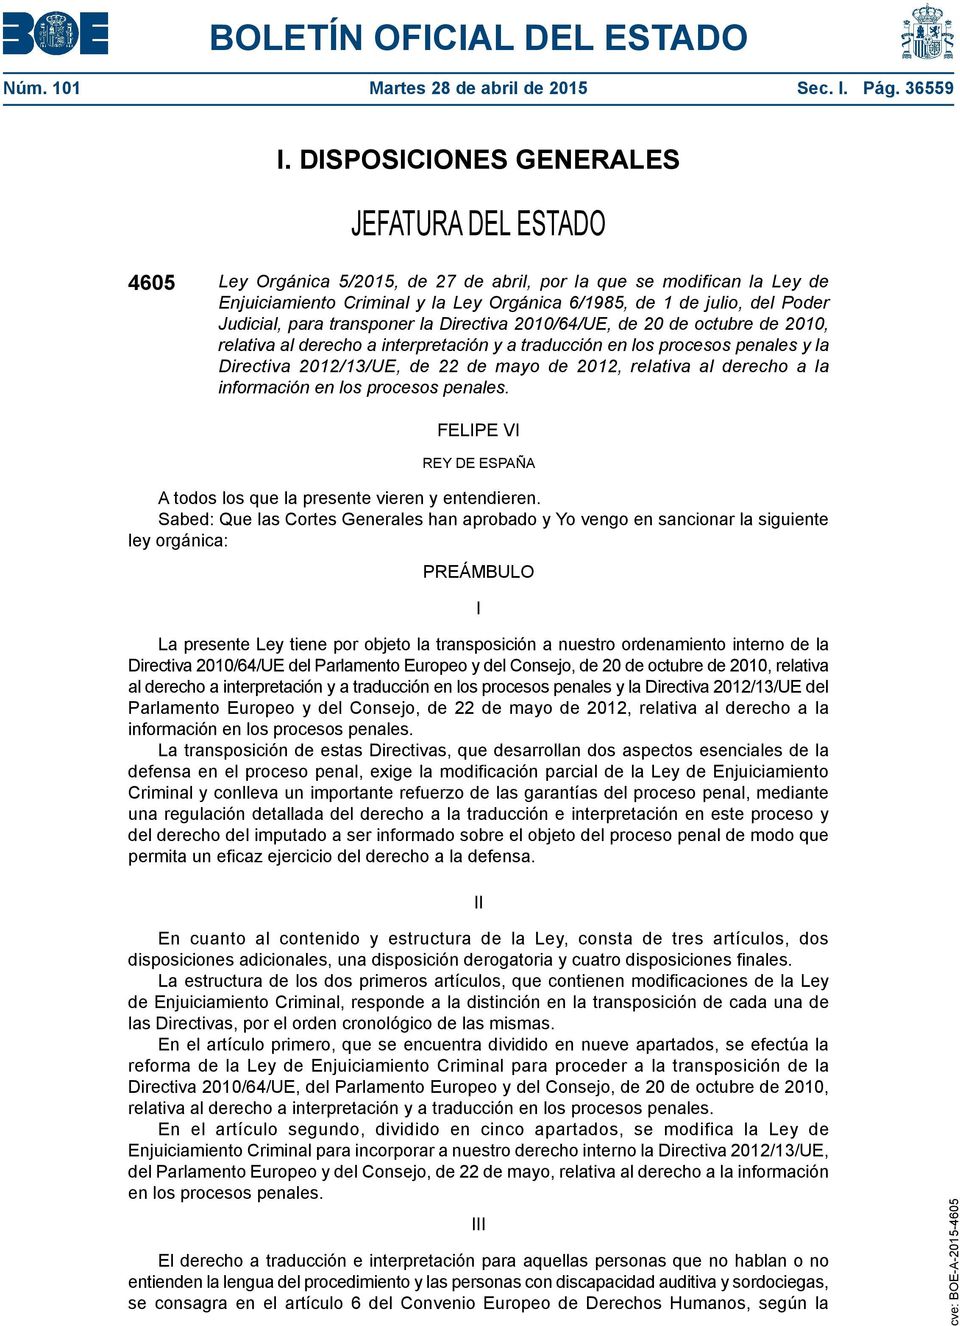 Judicial, para transponer la Directiva 2010/64/UE, de 20 de octubre de 2010, relativa al derecho a interpretación y a traducción en los procesos penales y la Directiva 2012/13/UE, de 22 de mayo de